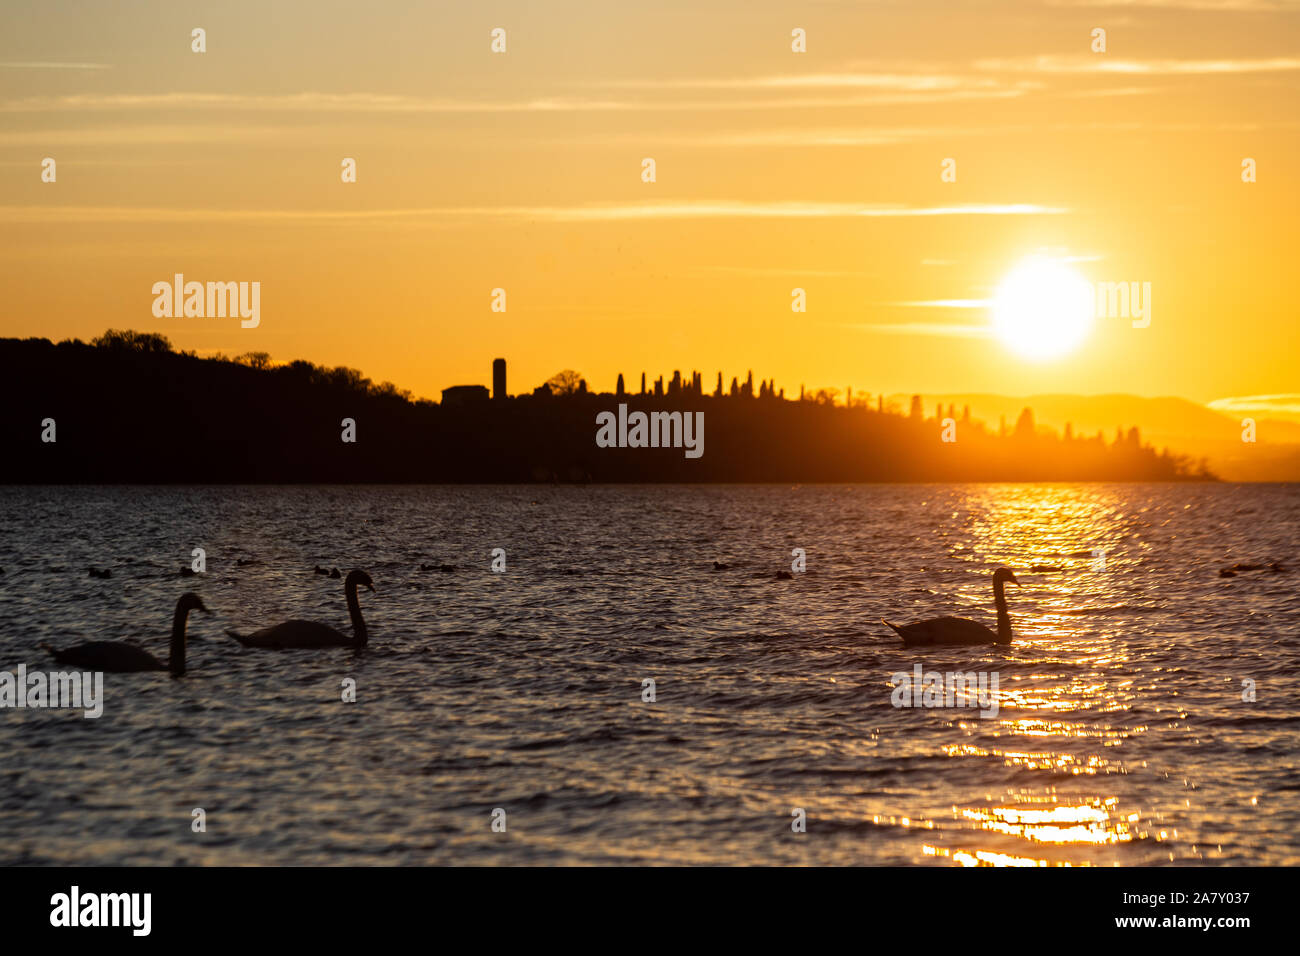 Un groupe de cygnes sur le lac Trasimeno (Ombrie, Italie) au coucher du soleil, avec une réflexion sur l'eau Banque D'Images